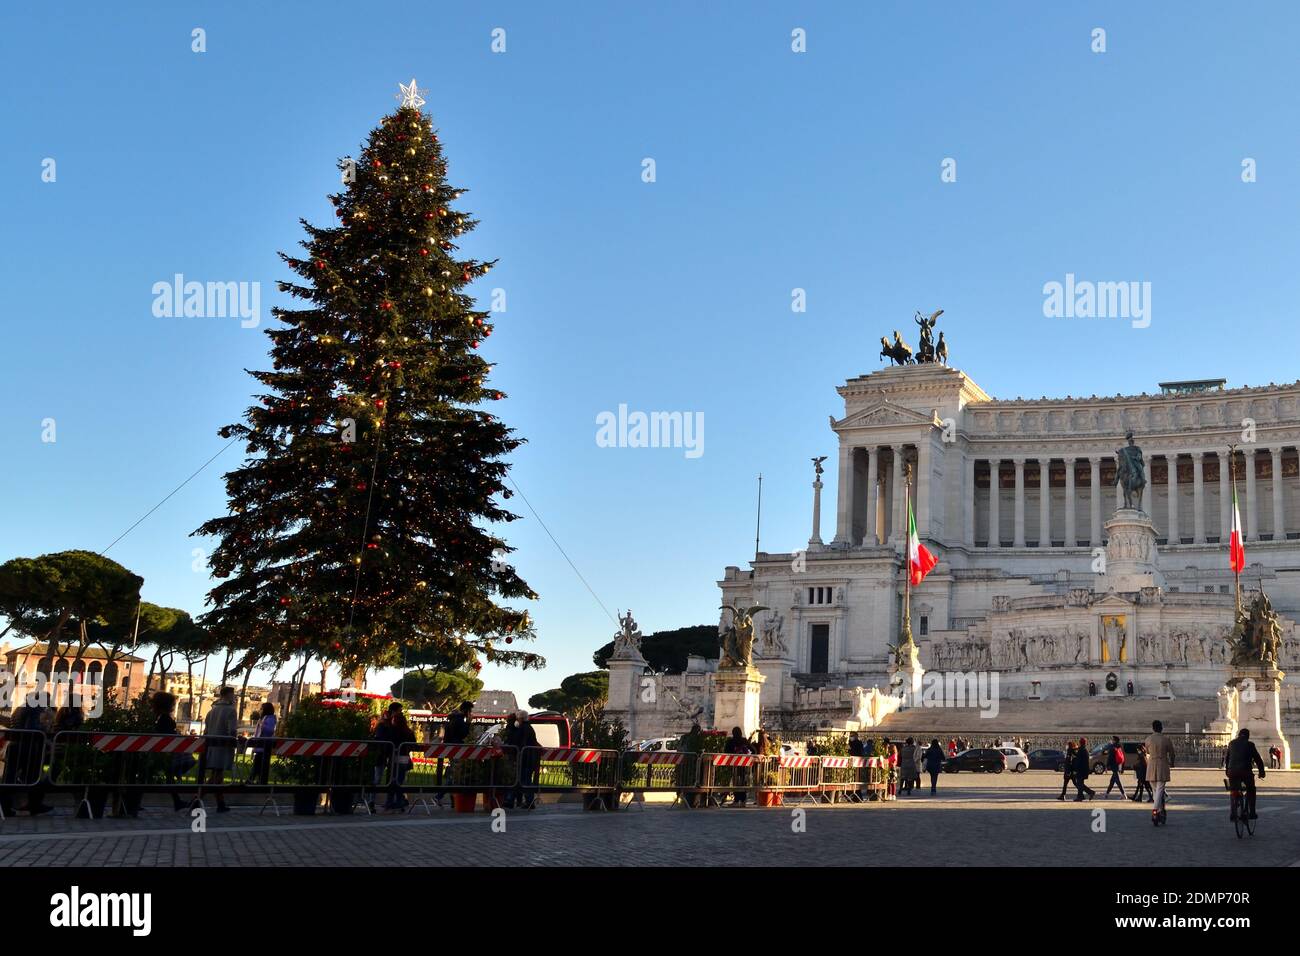 Roma, Italia - 13 de diciembre de 2020: Vista del famoso árbol de Navidad en la Piazza Venezia con pocos turistas debido a la epidemia de Covid19. Foto de stock